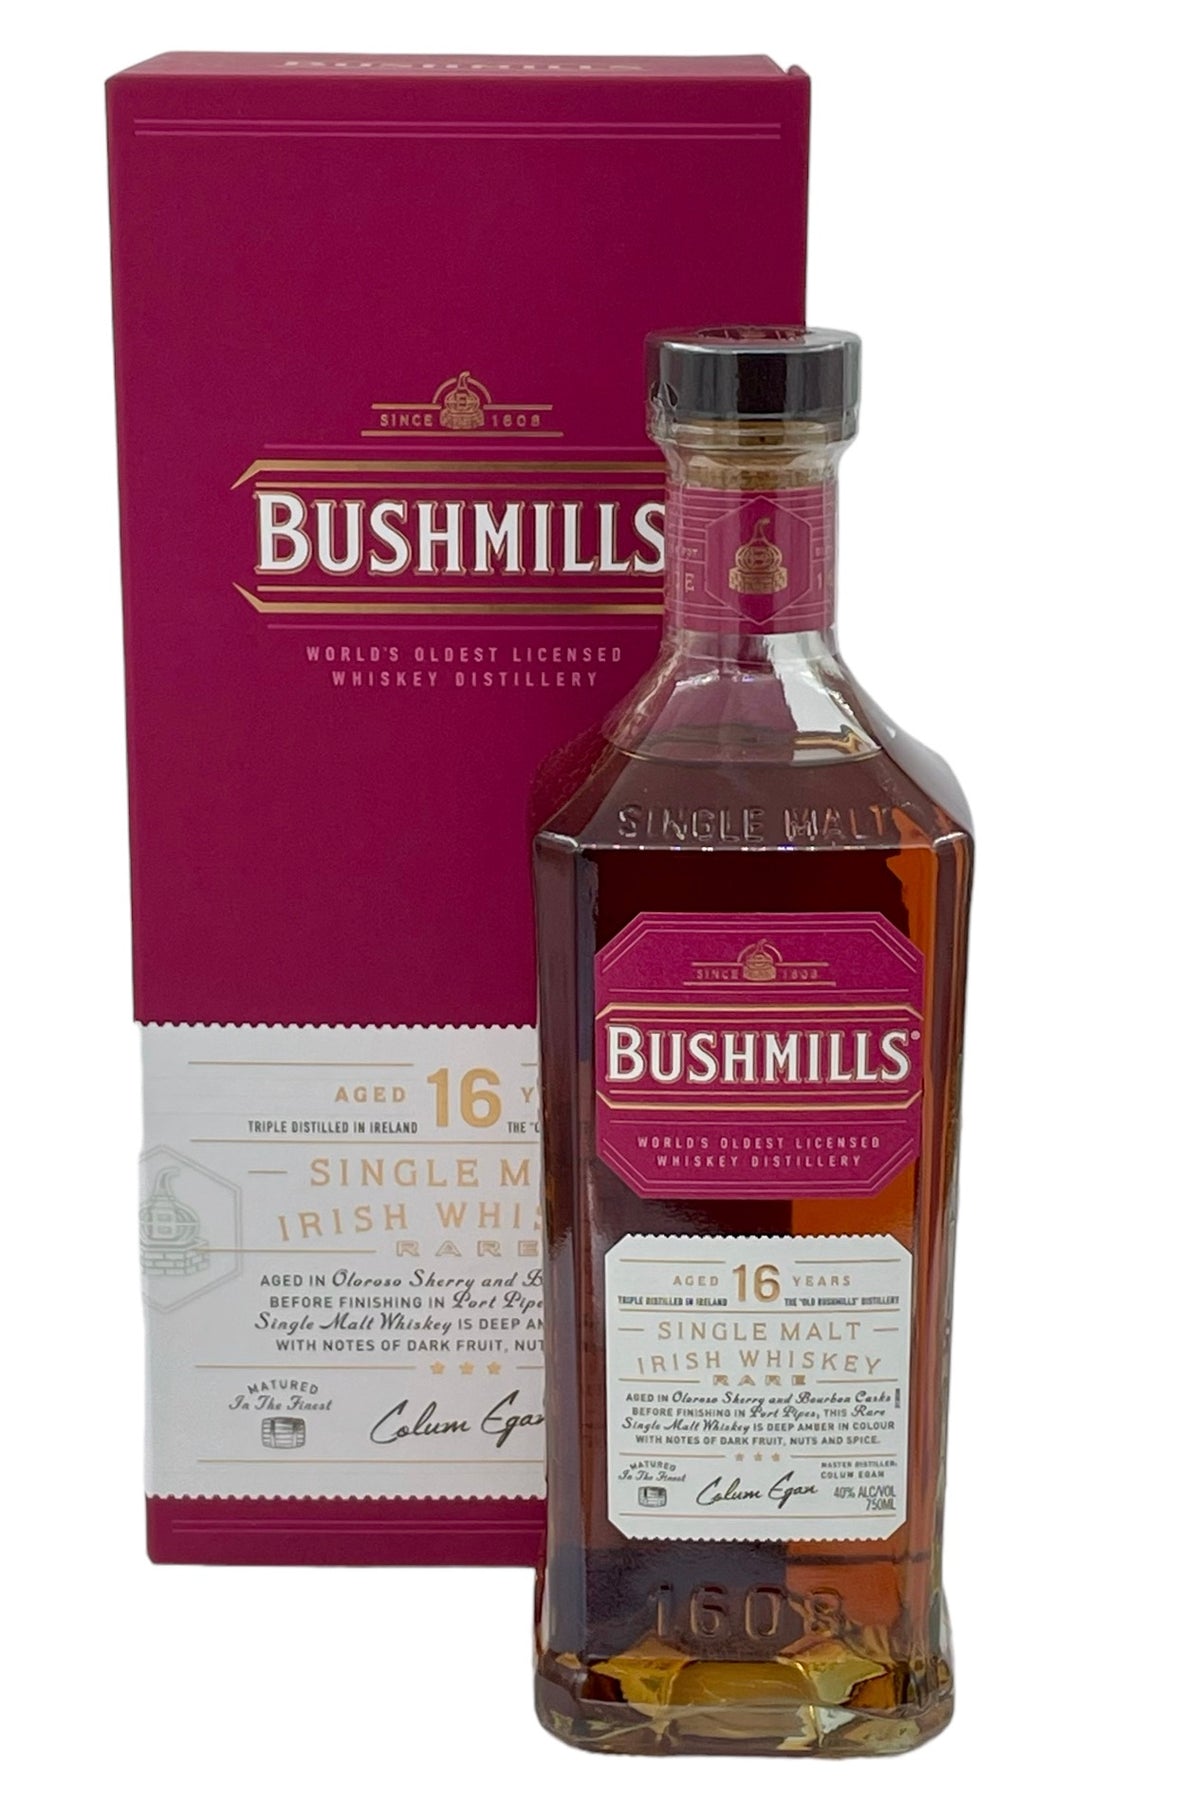 Bushmills 16 year Old Single Malt Irish Whiskey